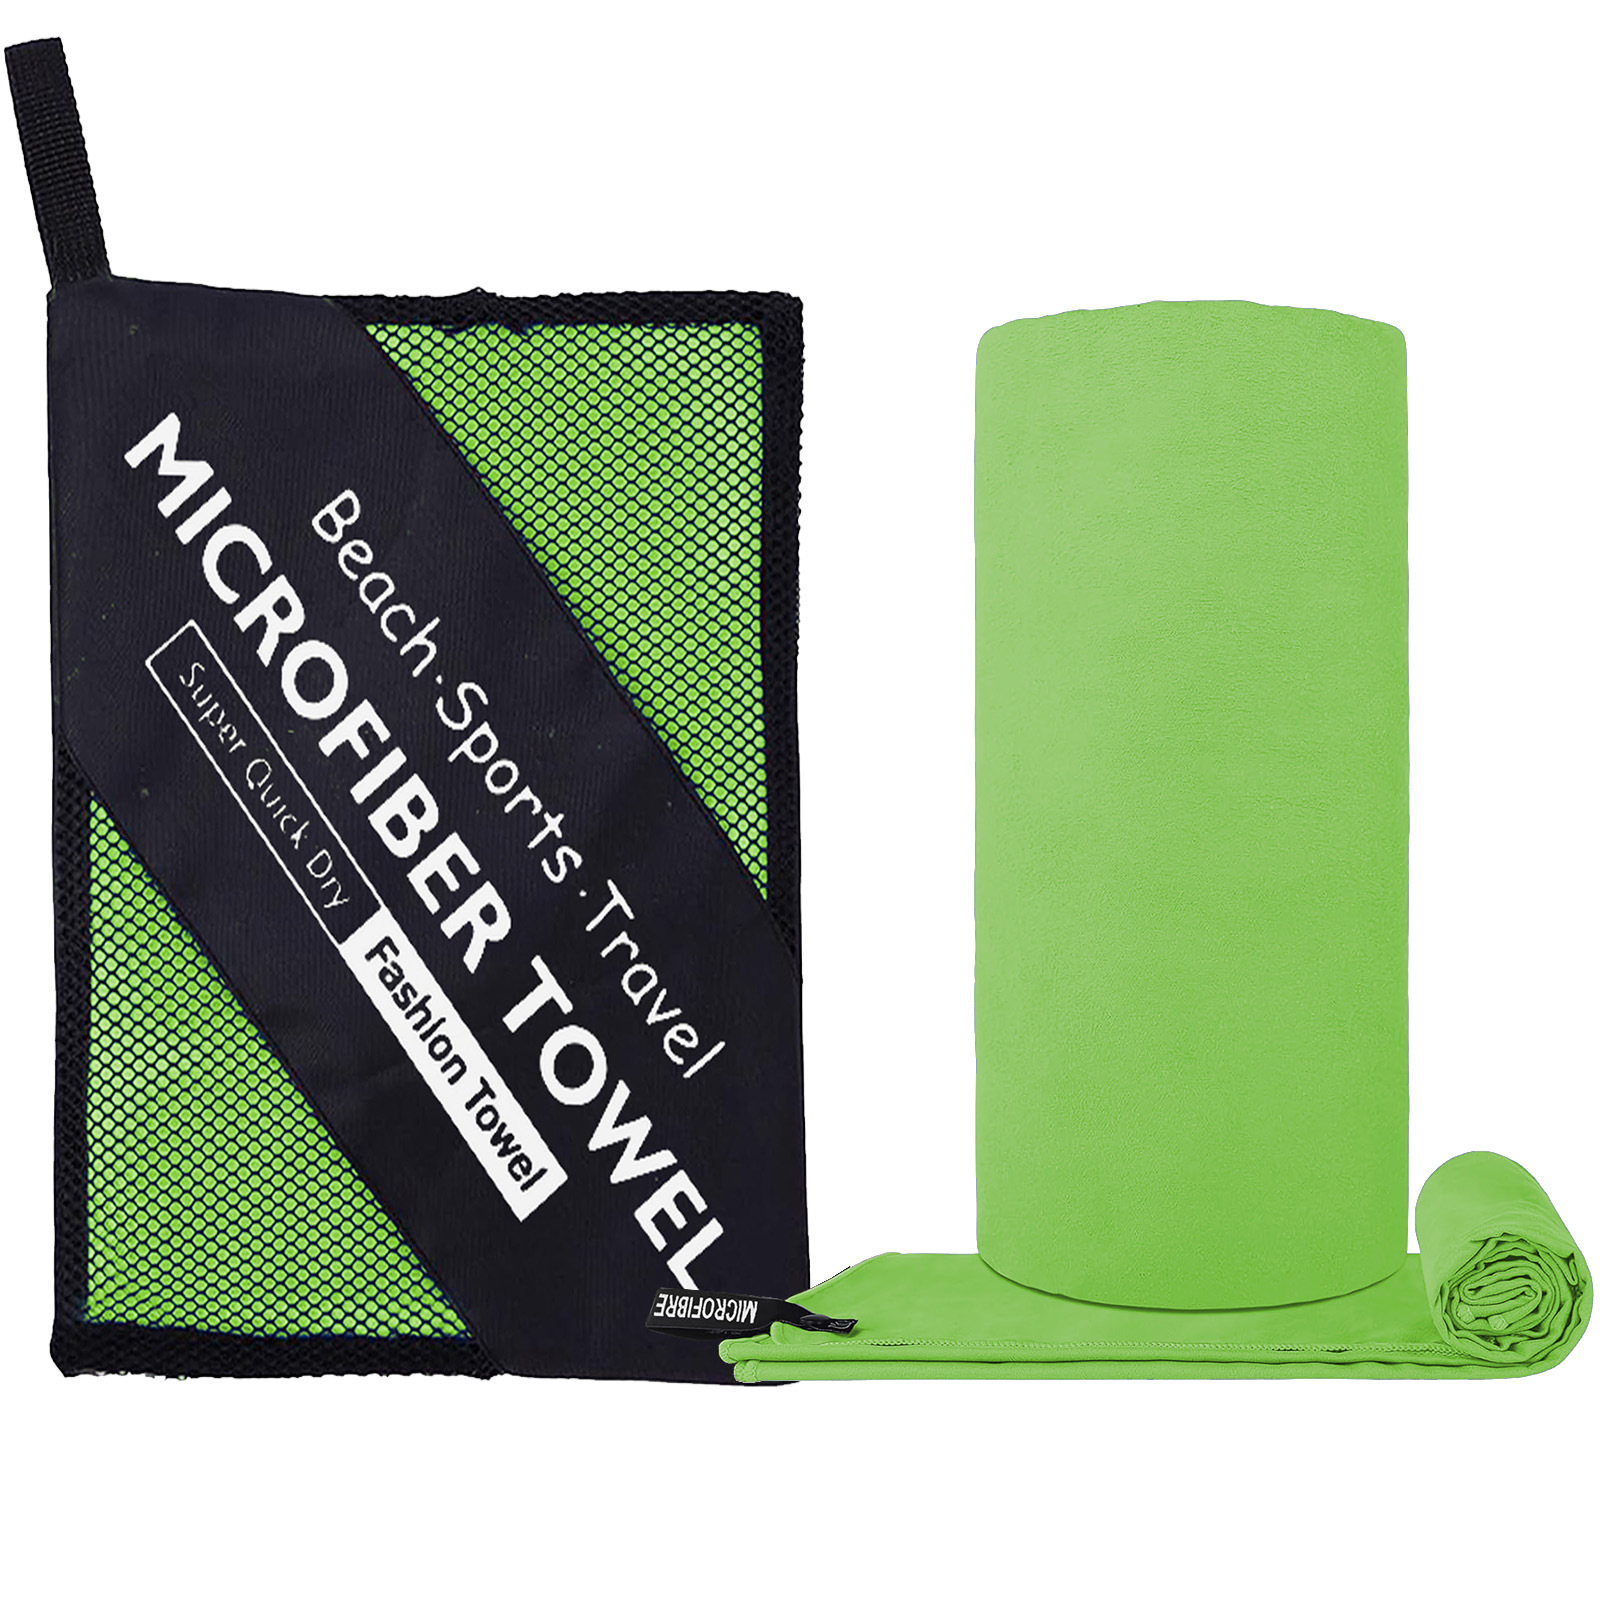 Fluorescent green ( zipper bag )